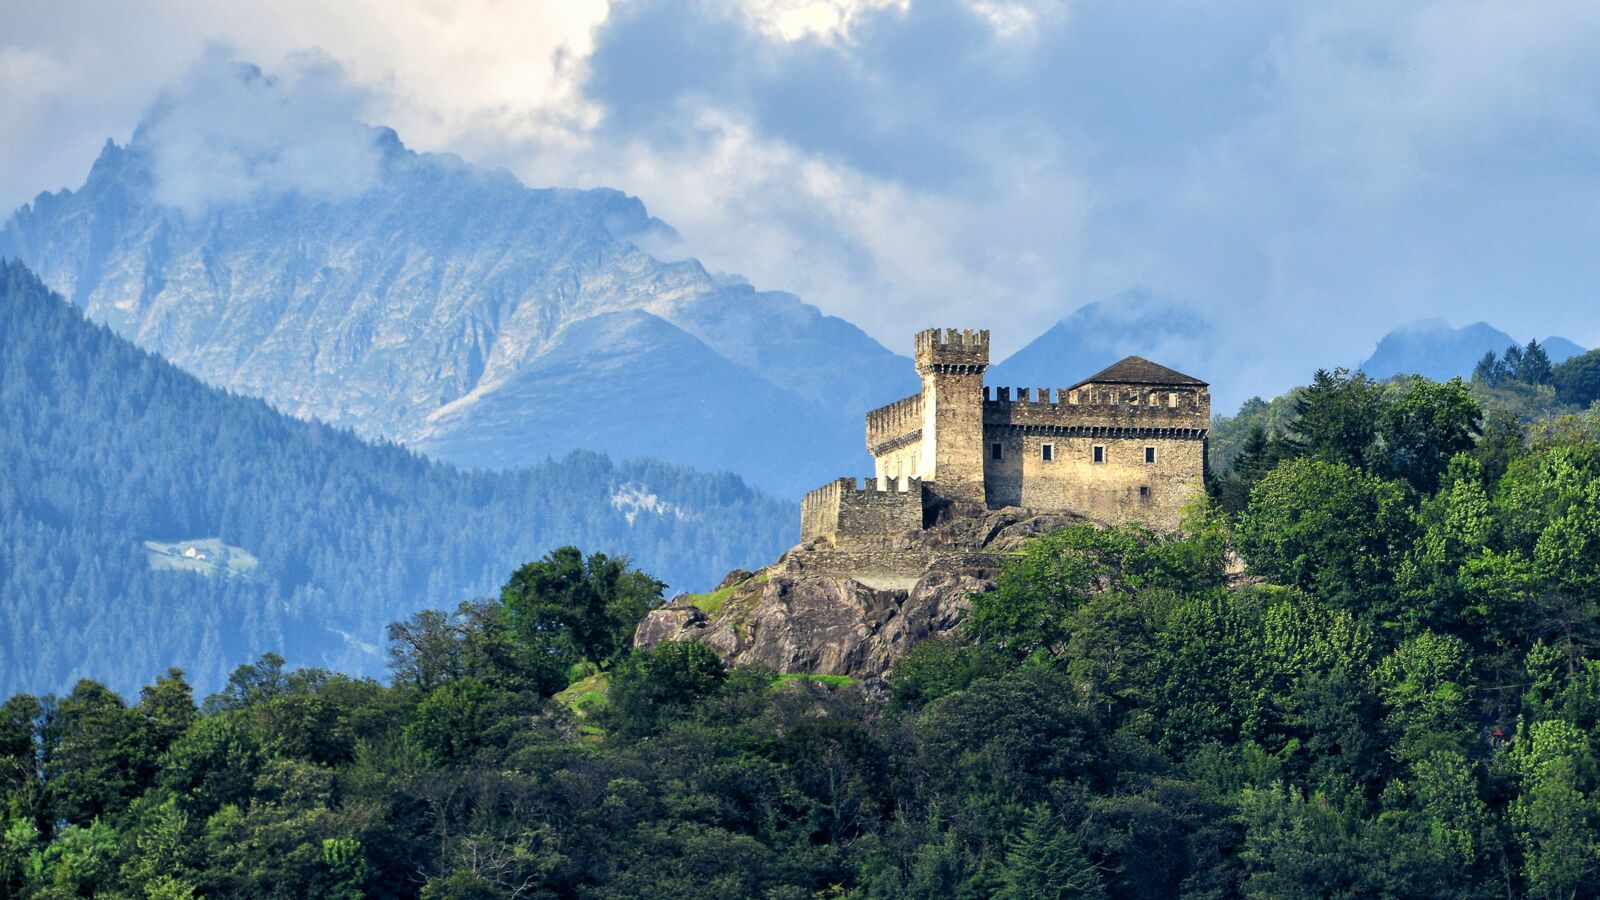 Festung von Bellinzona - Castello di Sasso Corbaro